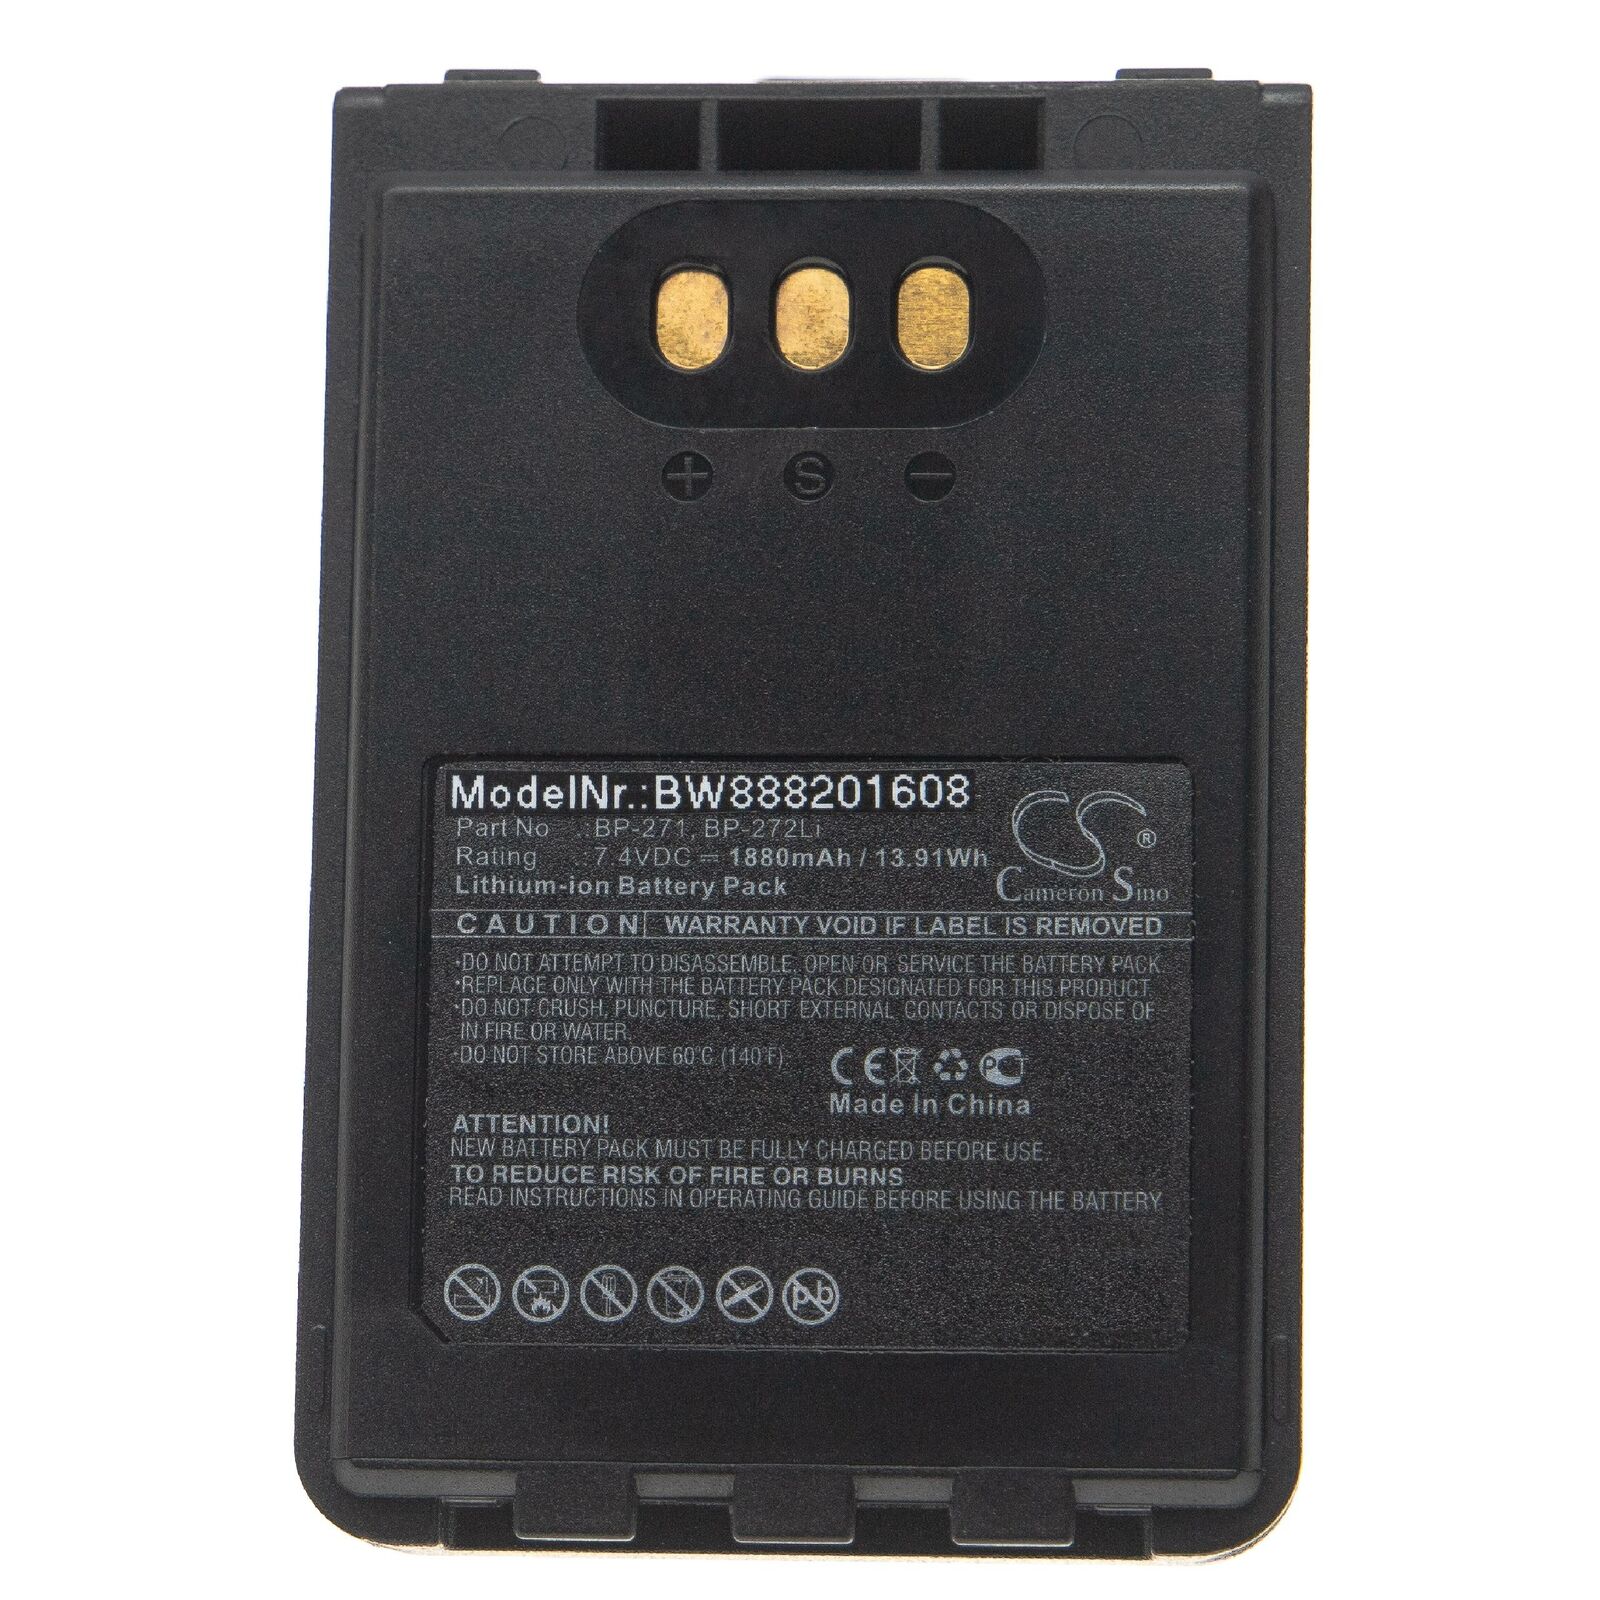 Batterie ICOM ID-31A, ID-31E, ID-51A, ID-51E, BP-271, BP-272Li(compatible)